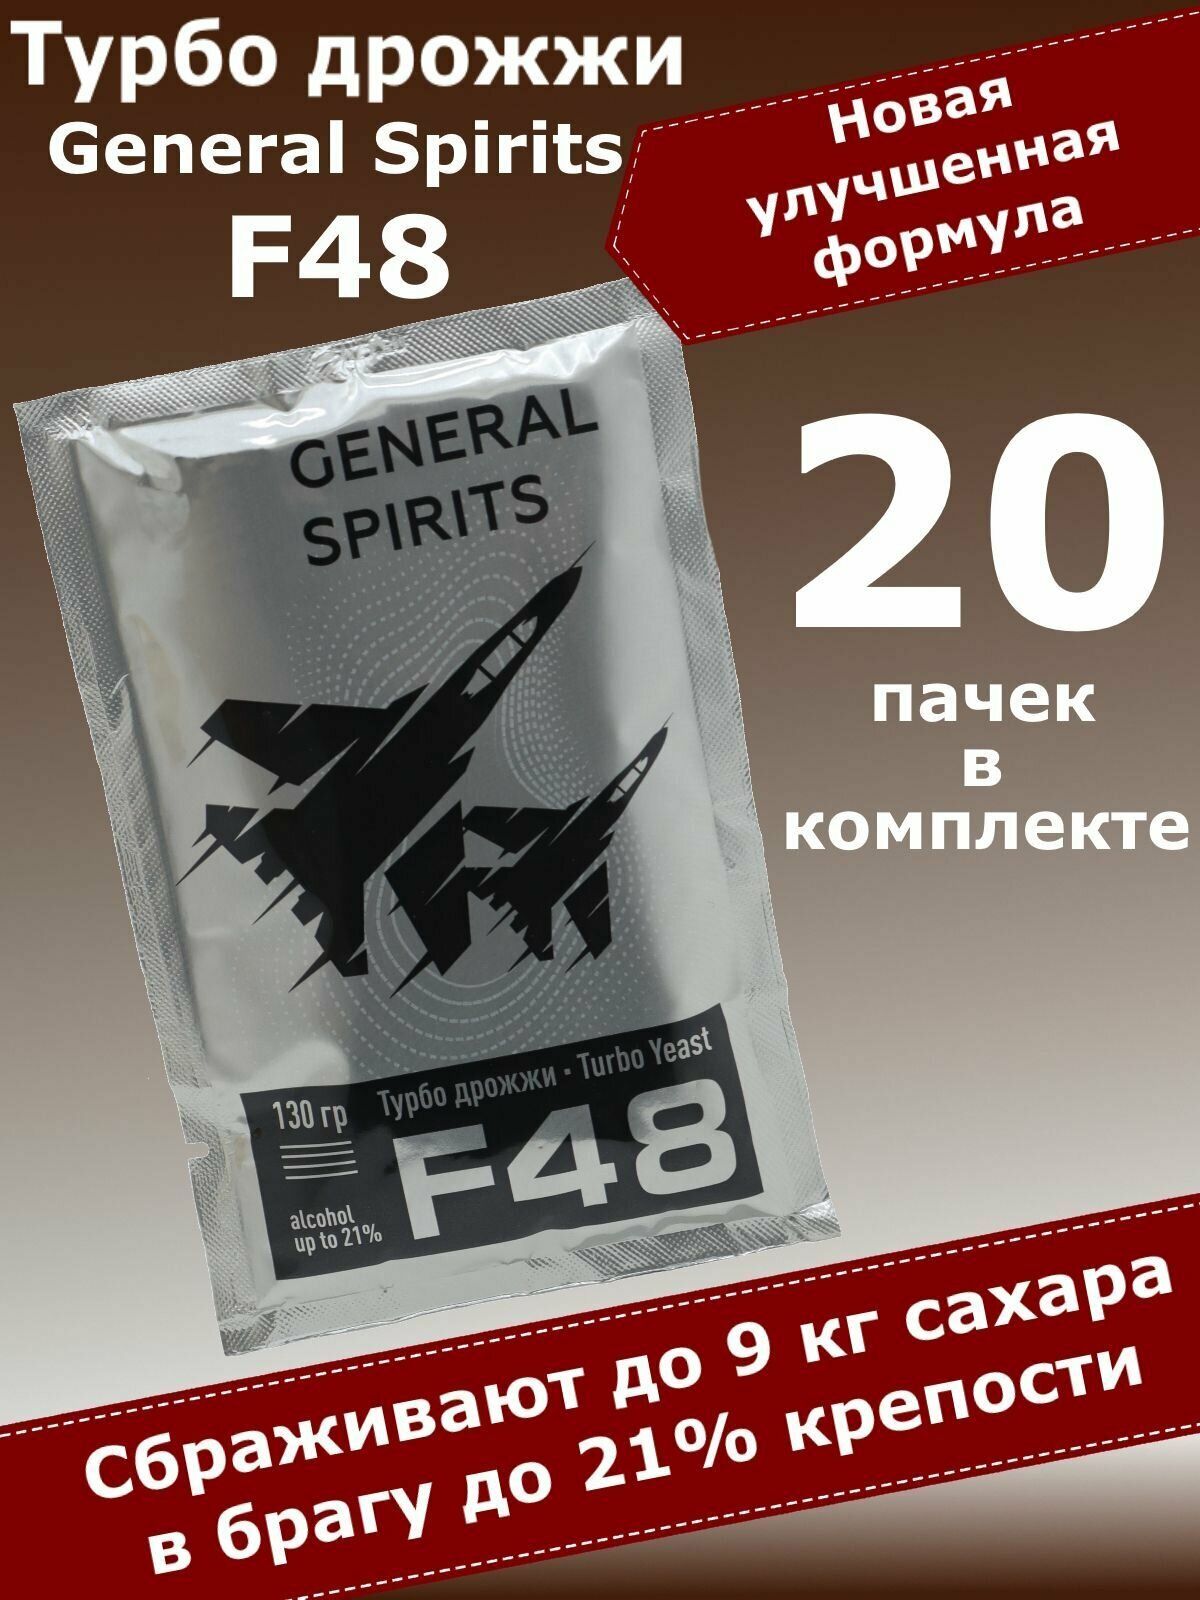 Спиртовые турбо дрожжи для самогона General Spirits F48, 130 гр (20 пачек)